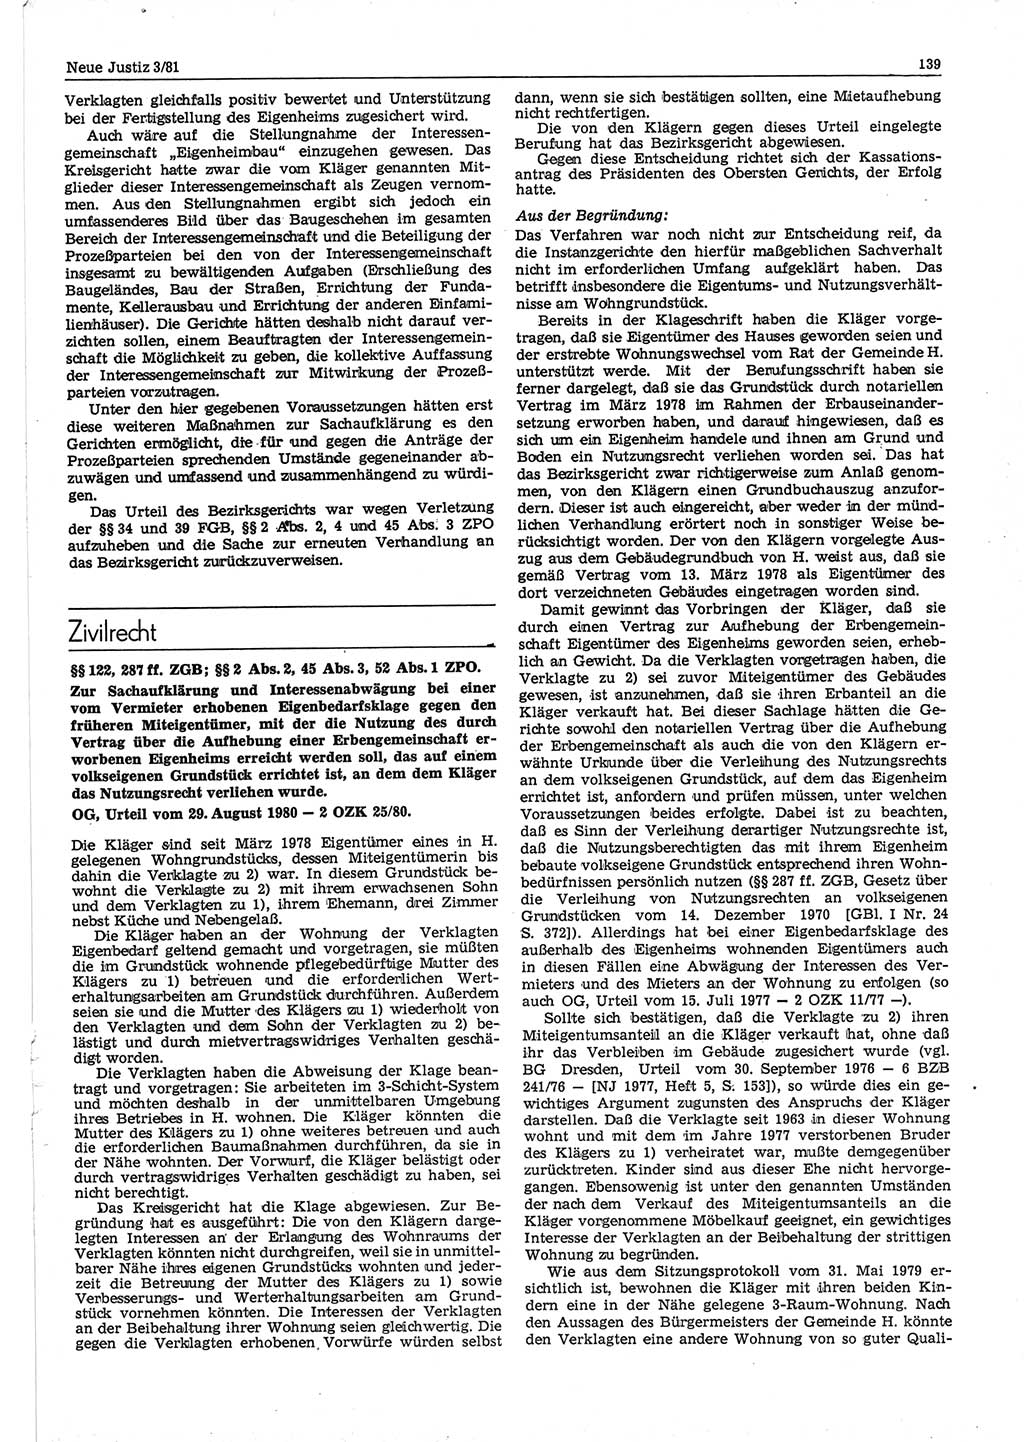 Neue Justiz (NJ), Zeitschrift für sozialistisches Recht und Gesetzlichkeit [Deutsche Demokratische Republik (DDR)], 35. Jahrgang 1981, Seite 139 (NJ DDR 1981, S. 139)